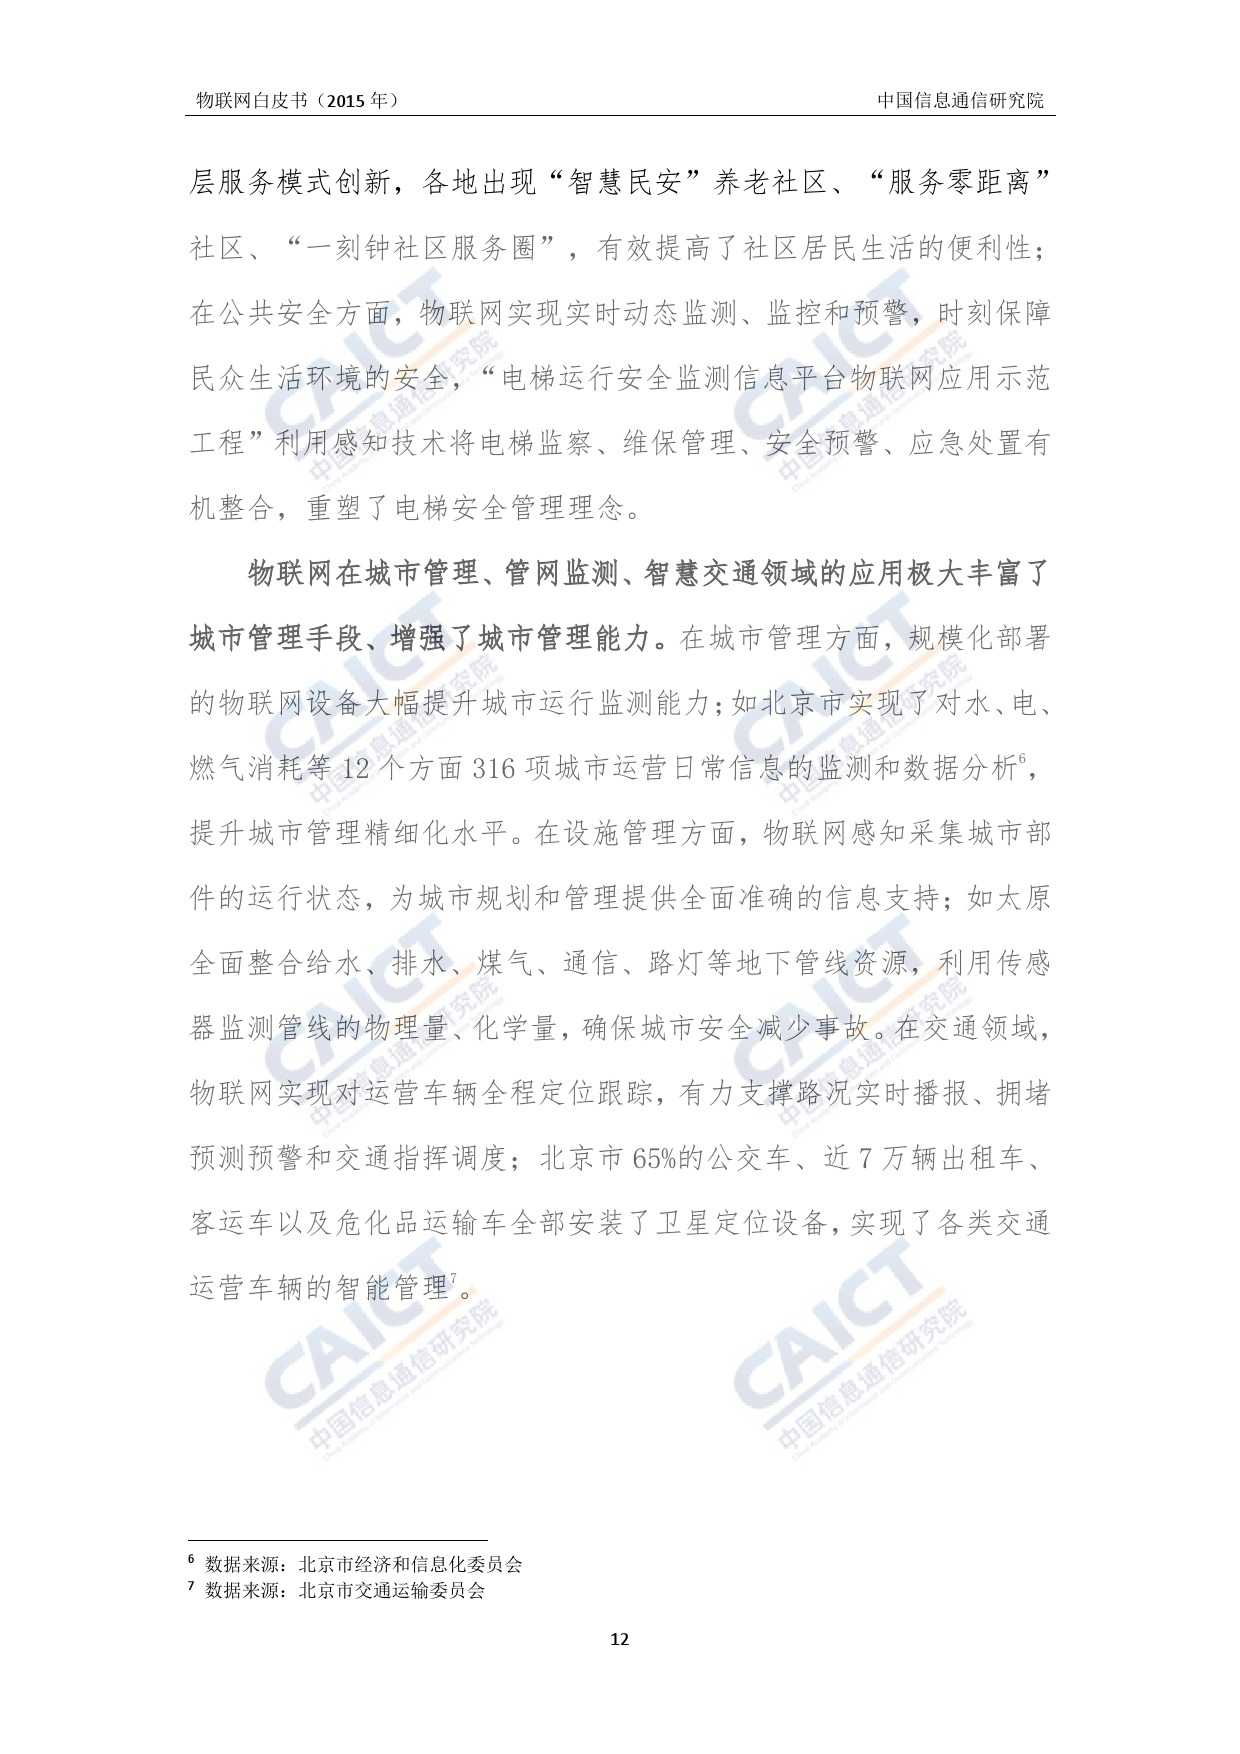 中国信息通信研究院：2015年物联网白皮书_000016